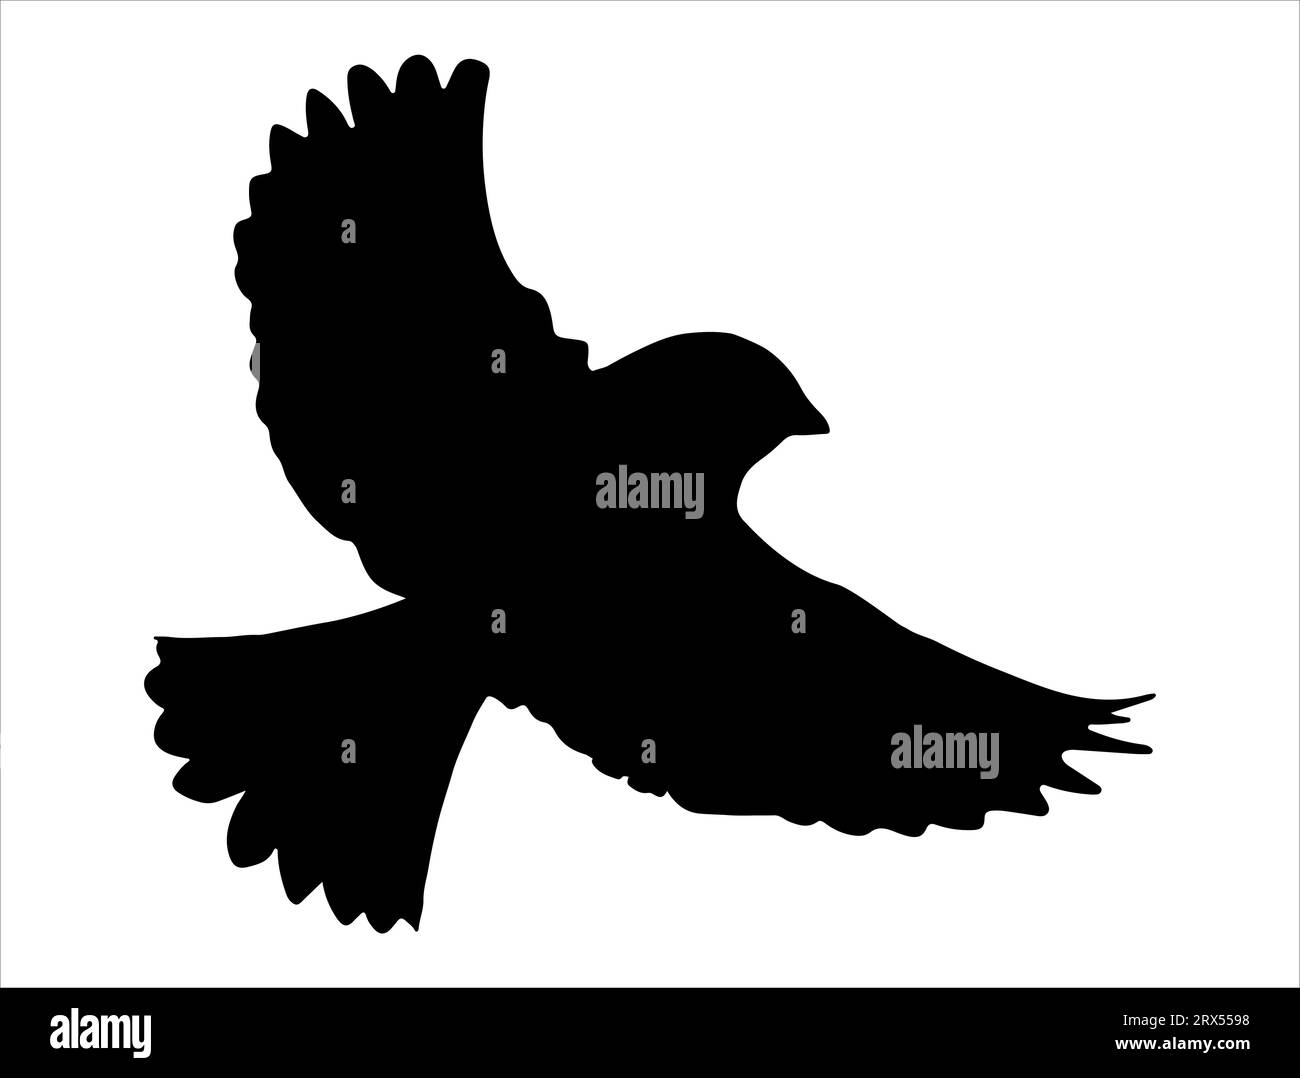 Flying bird silhouette vector art white background Stock Vector Image ...